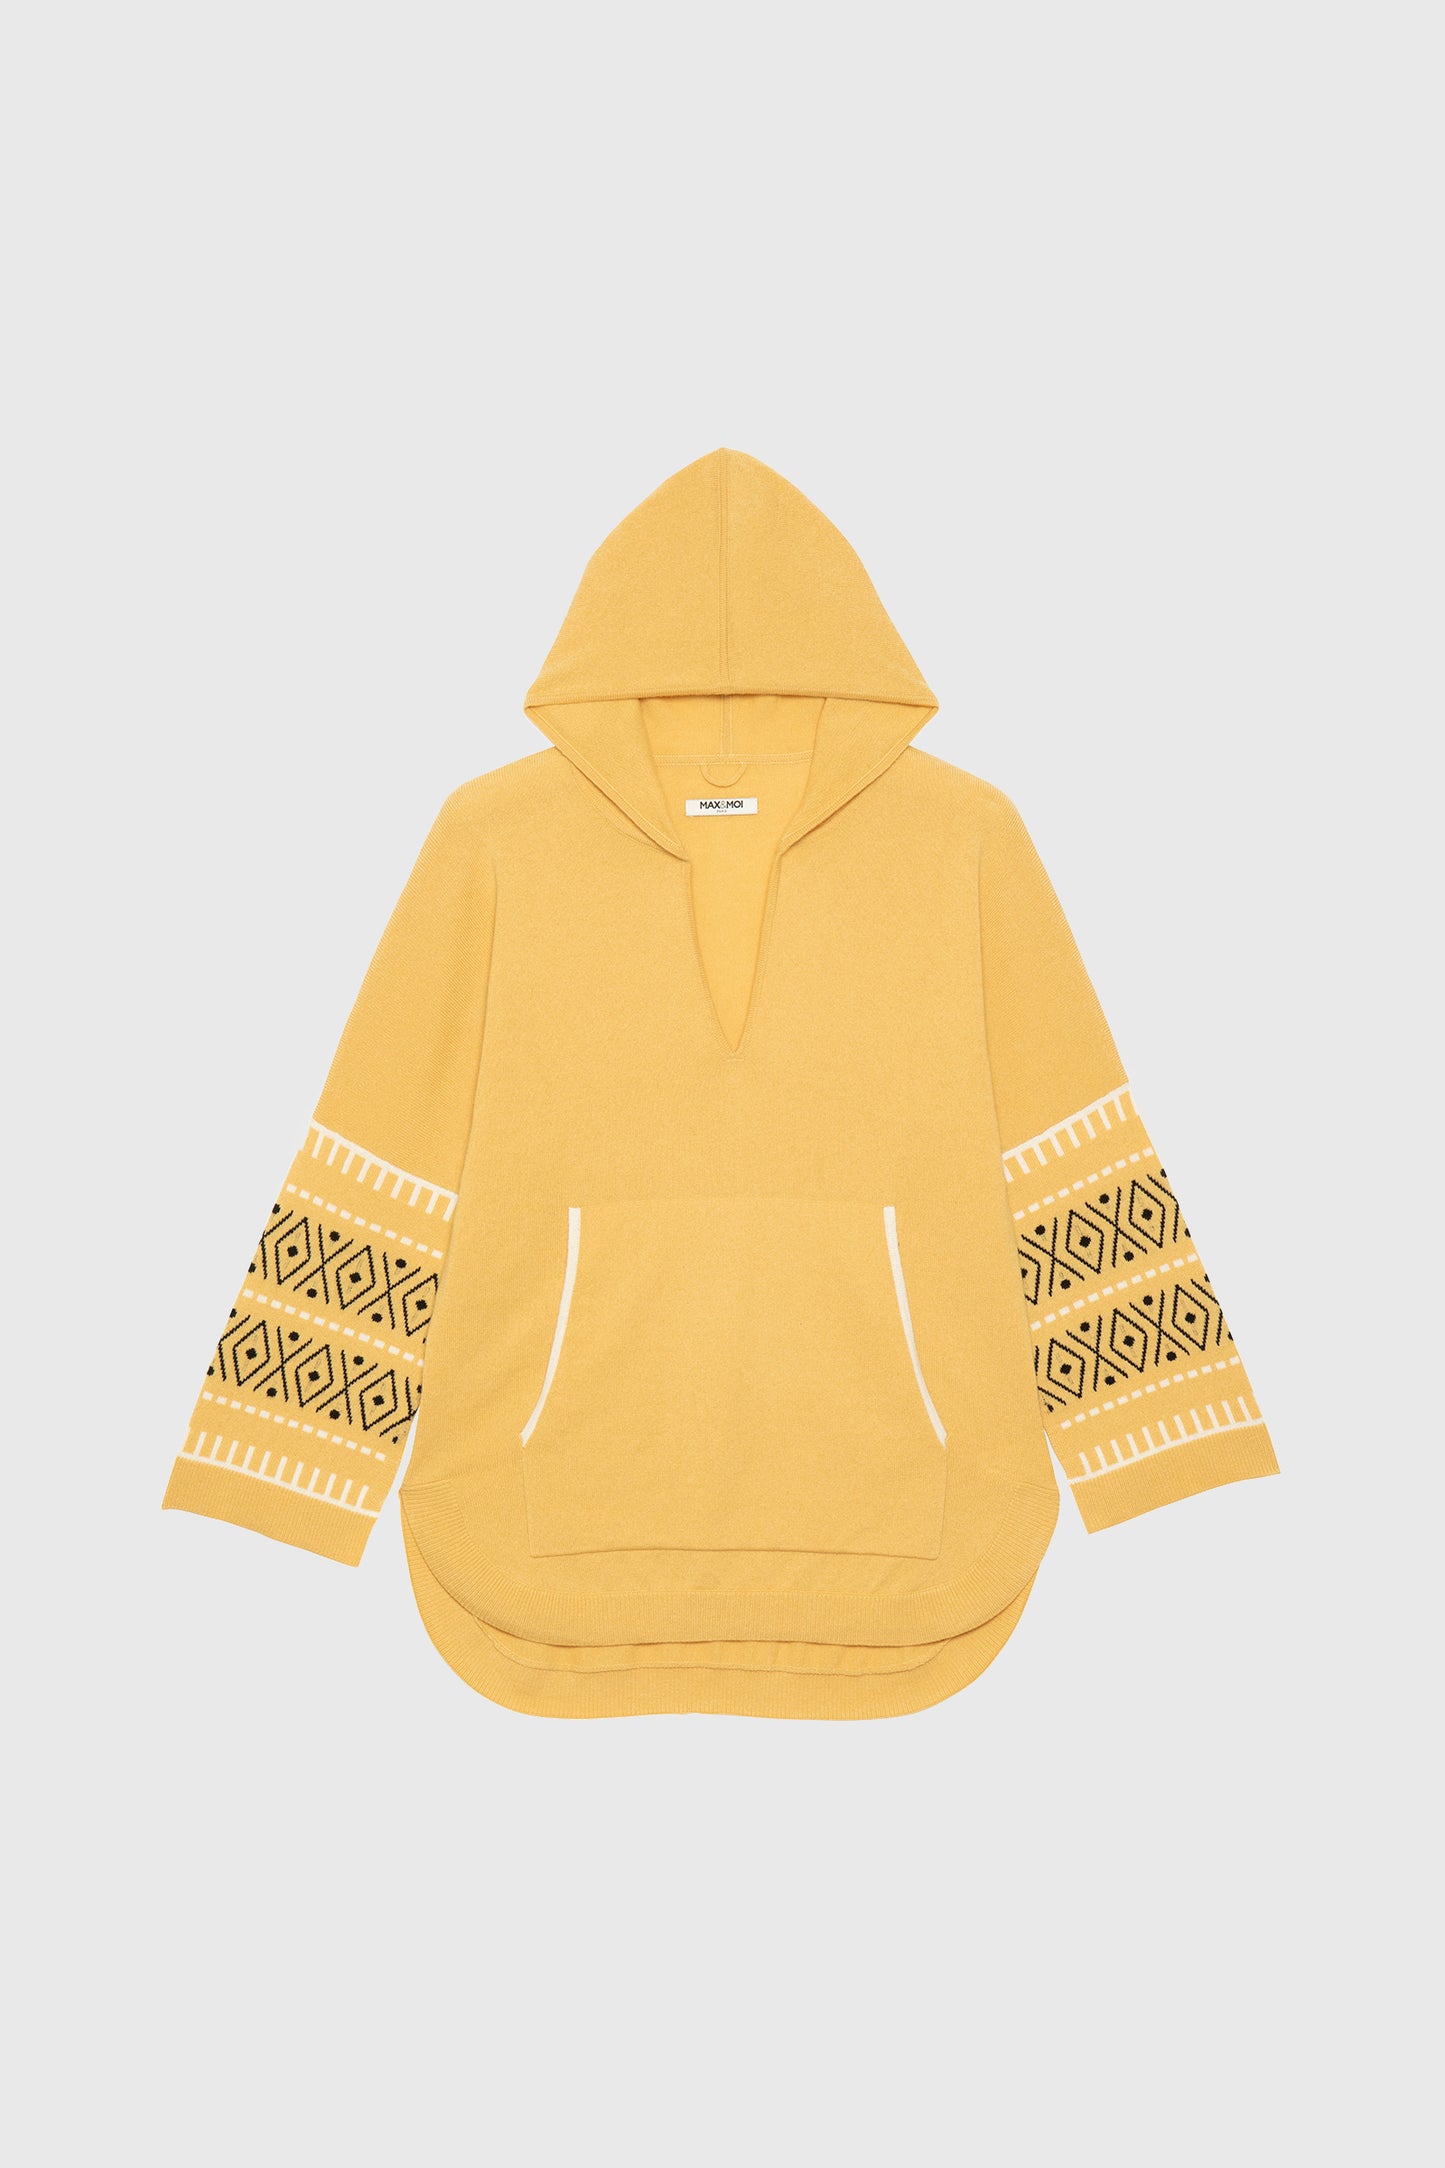 CALOUNDRA saffron cashmere sweater